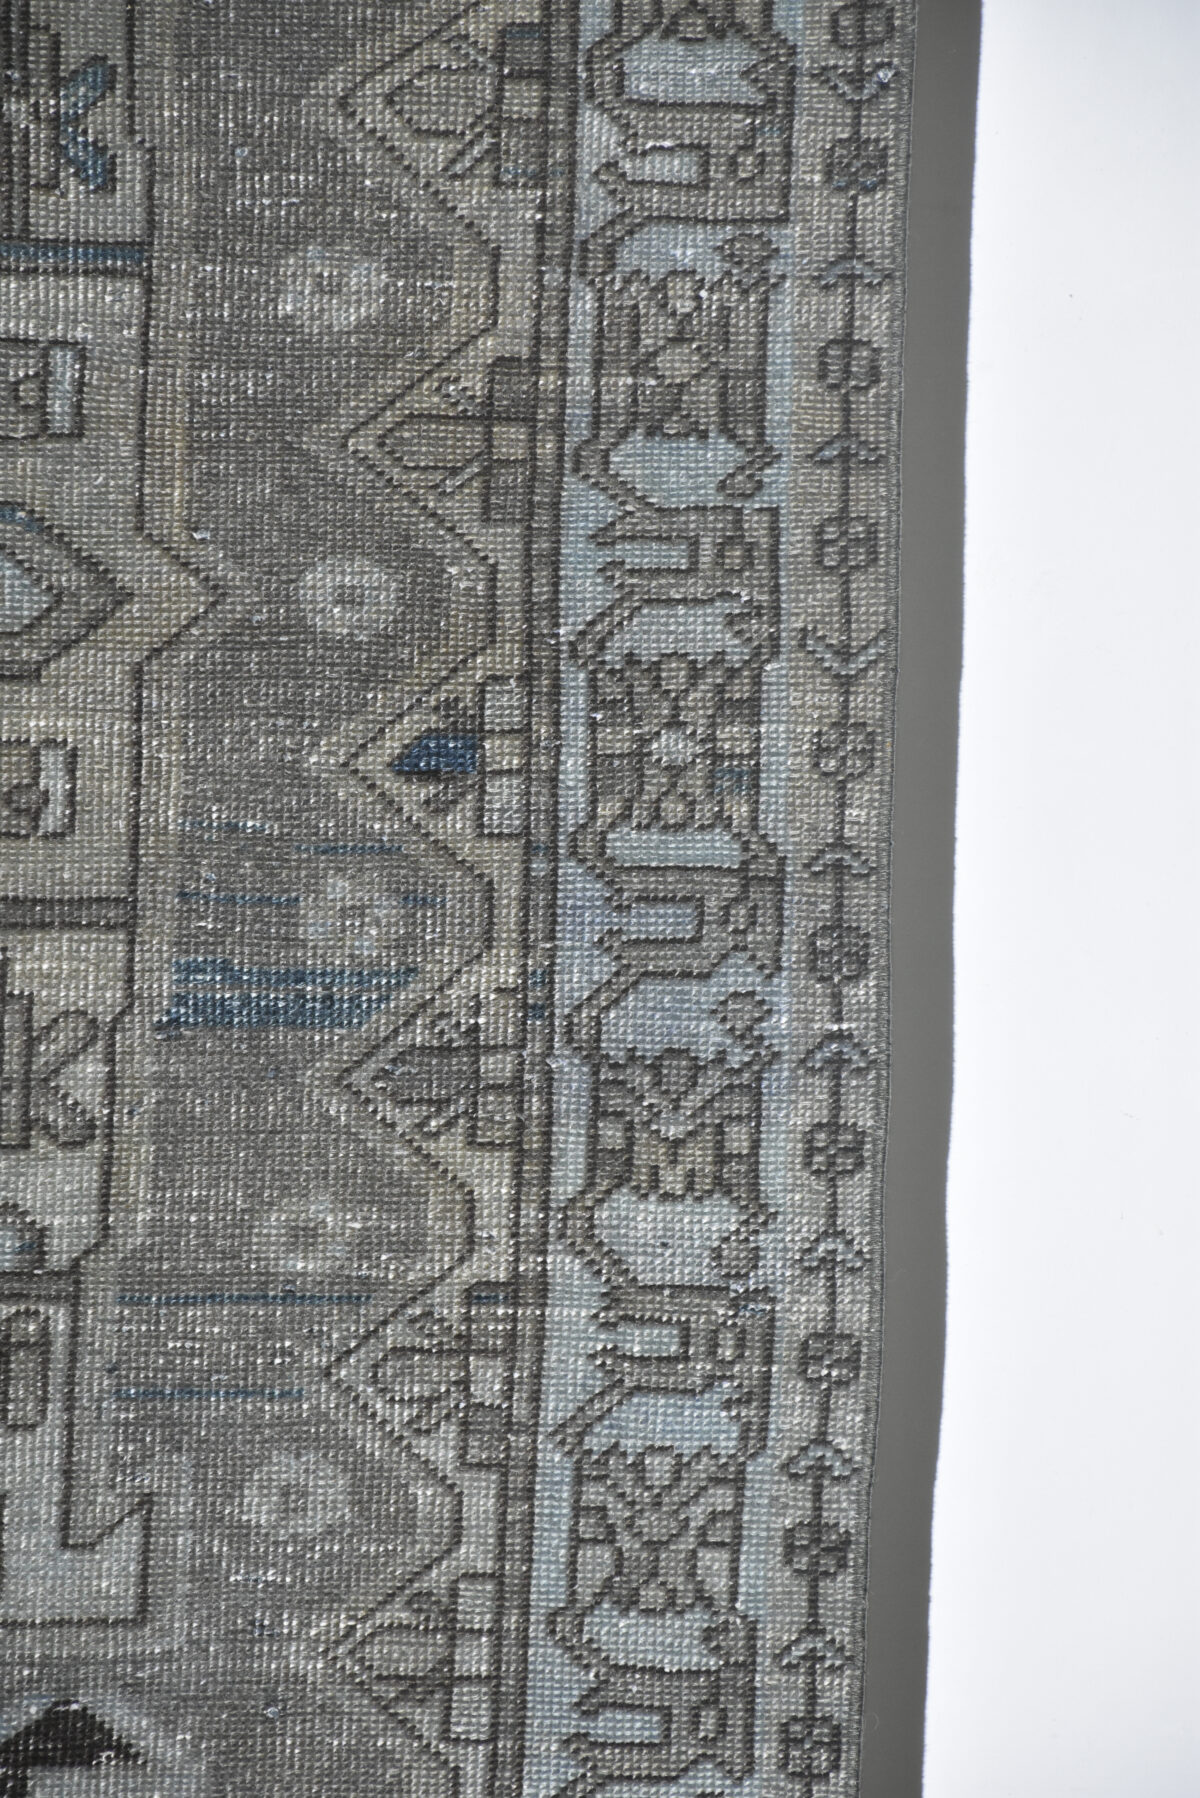 שטיח וינטאג' בגווני כחול תכלת ואפור